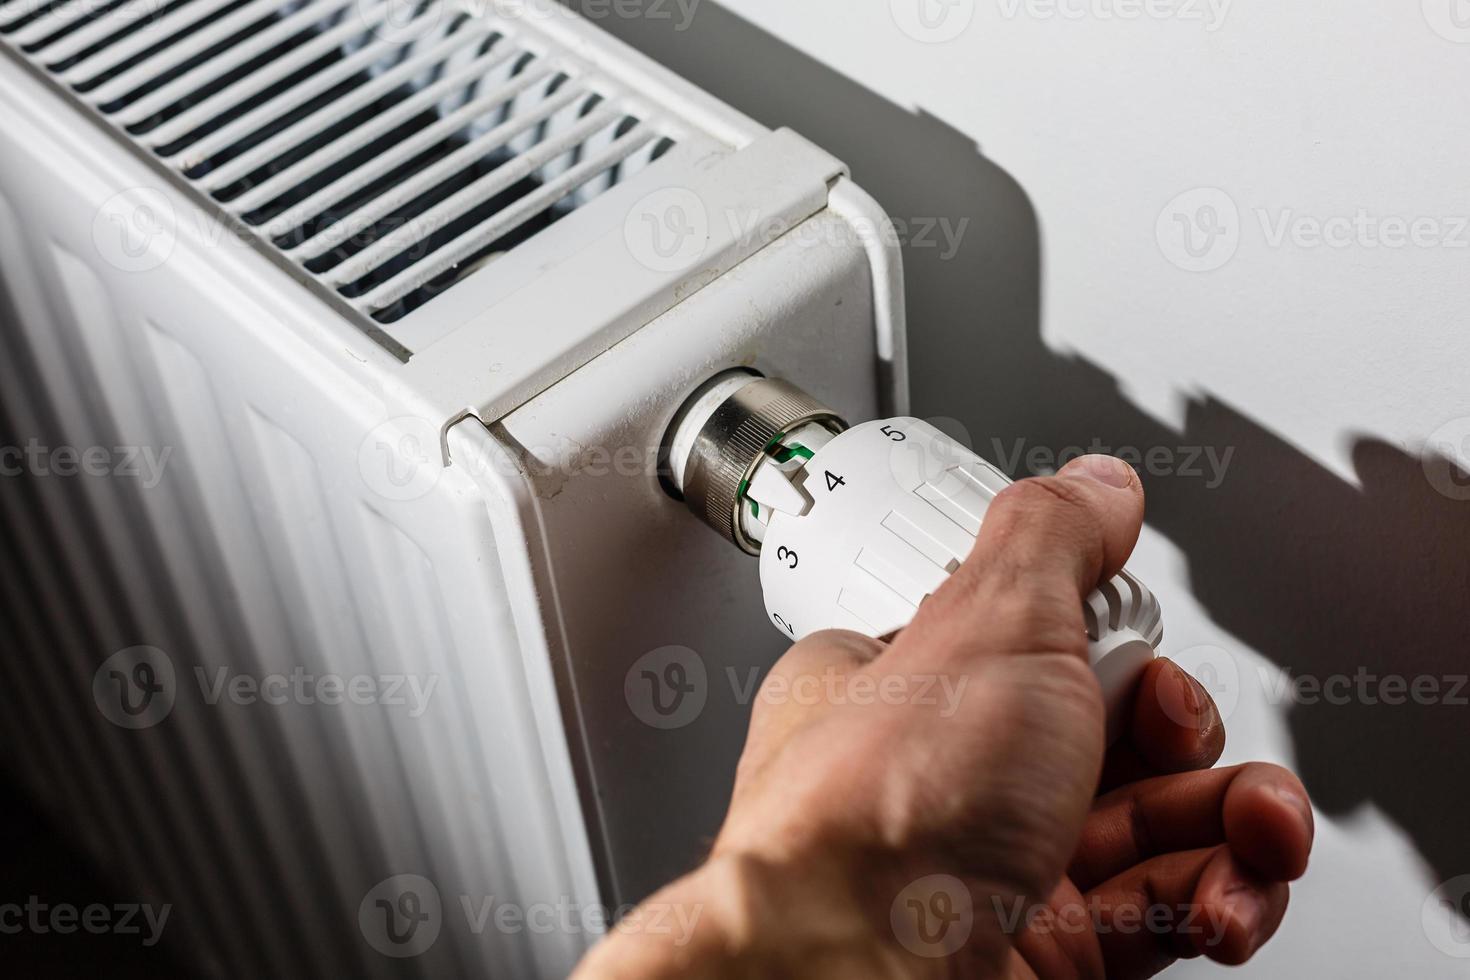 primer plano de la mano ajustando el termostato de calefacción foto